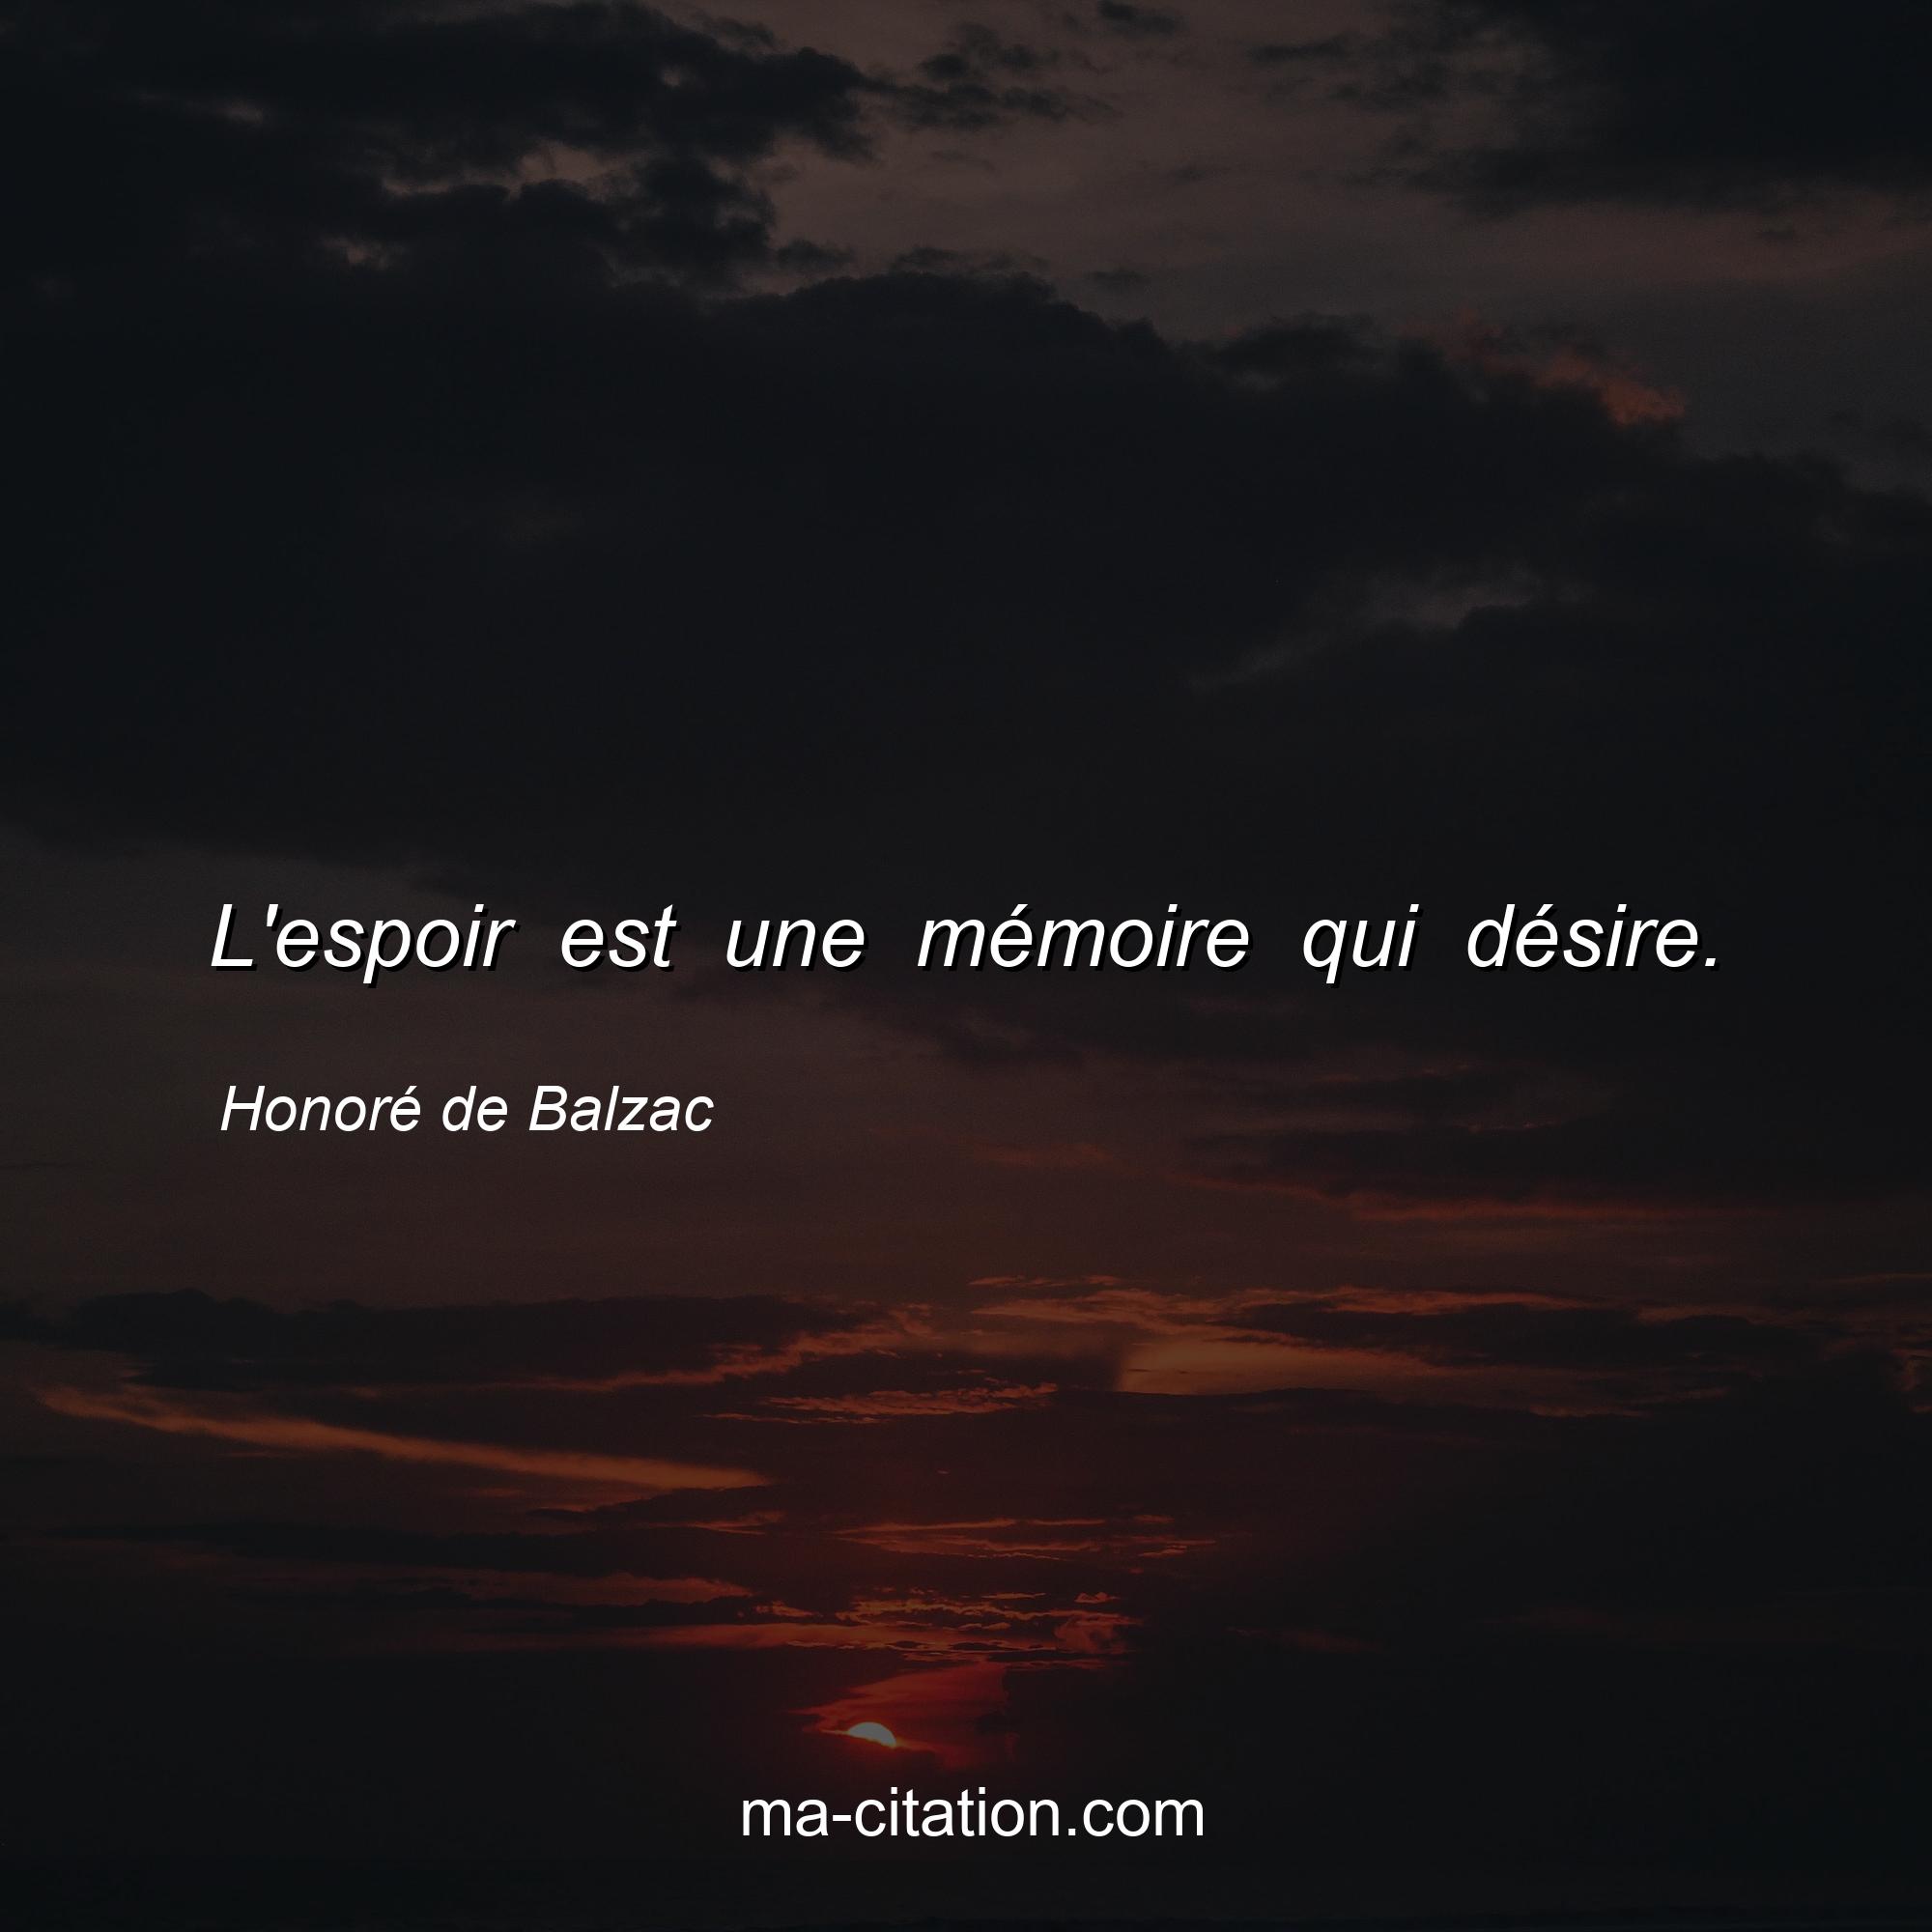 Honoré de Balzac : L'espoir est une mémoire qui désire.